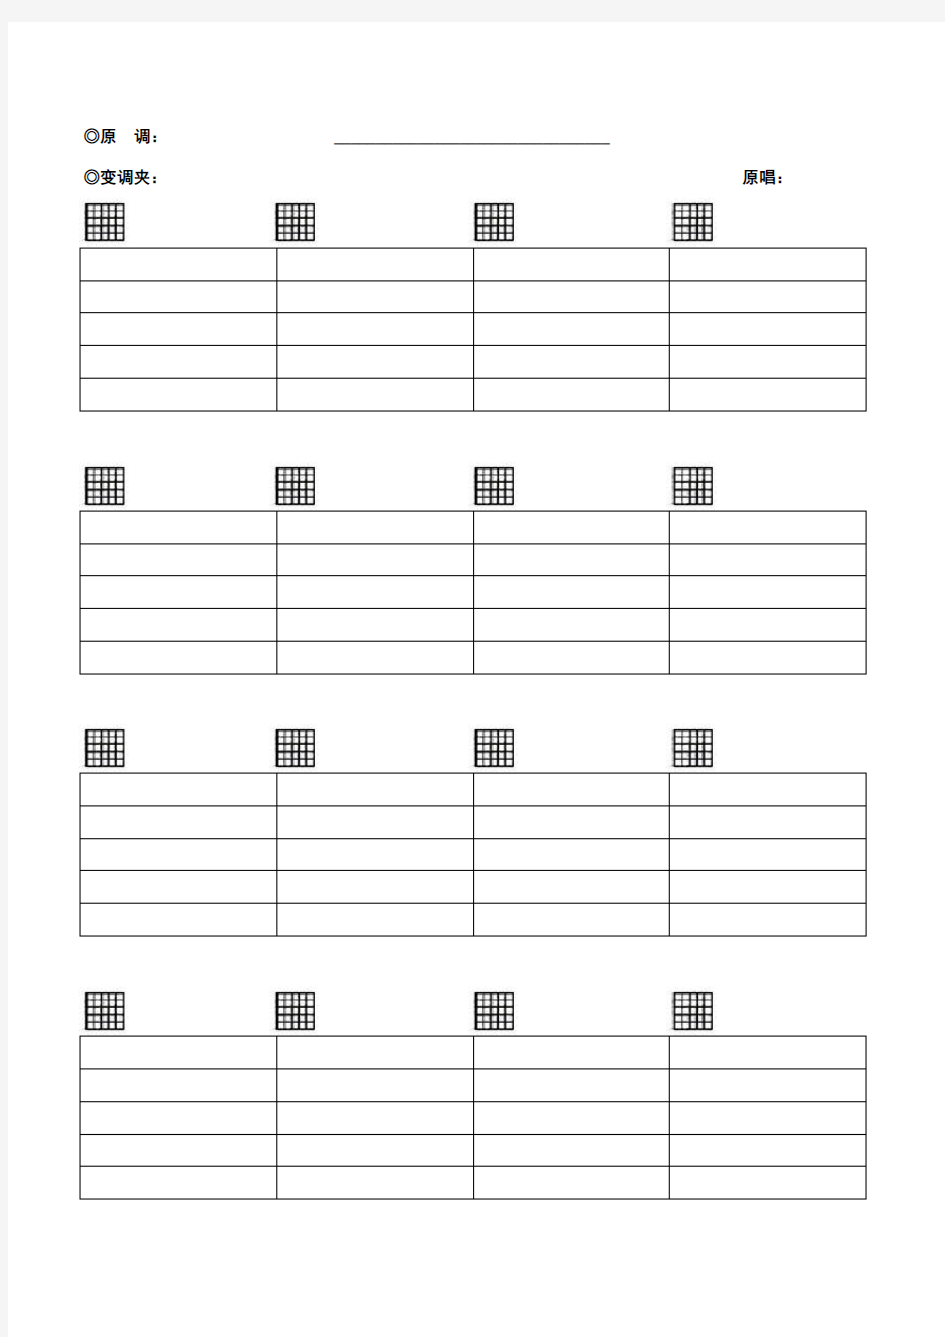 空白六线谱,带和弦,吉他谱纸,Word版本,格式正确,下载打印即可(完美清晰打印版)